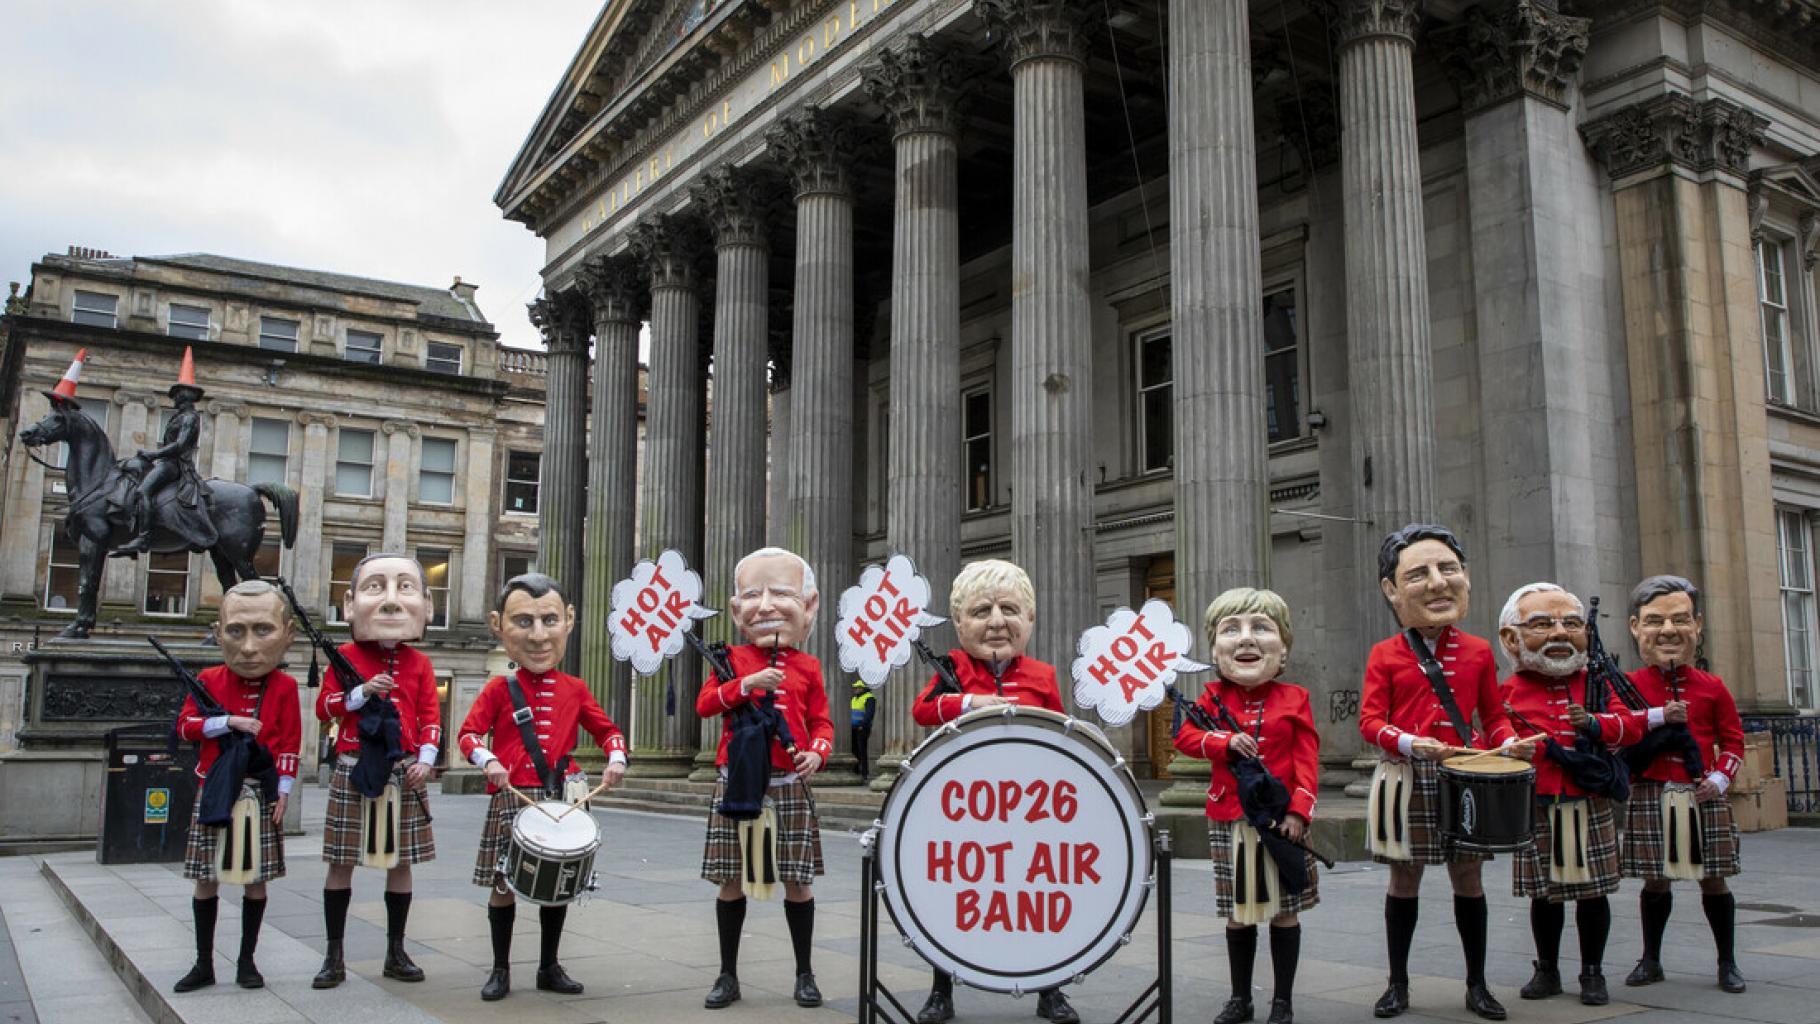 Figuren verschiedener Staatschef*innen posieren als „Hot Air Band“ („Heiße-Luft-Kapelle“). Sie tragen schottische Trachten und halten Dudelsäcke und Trommeln.